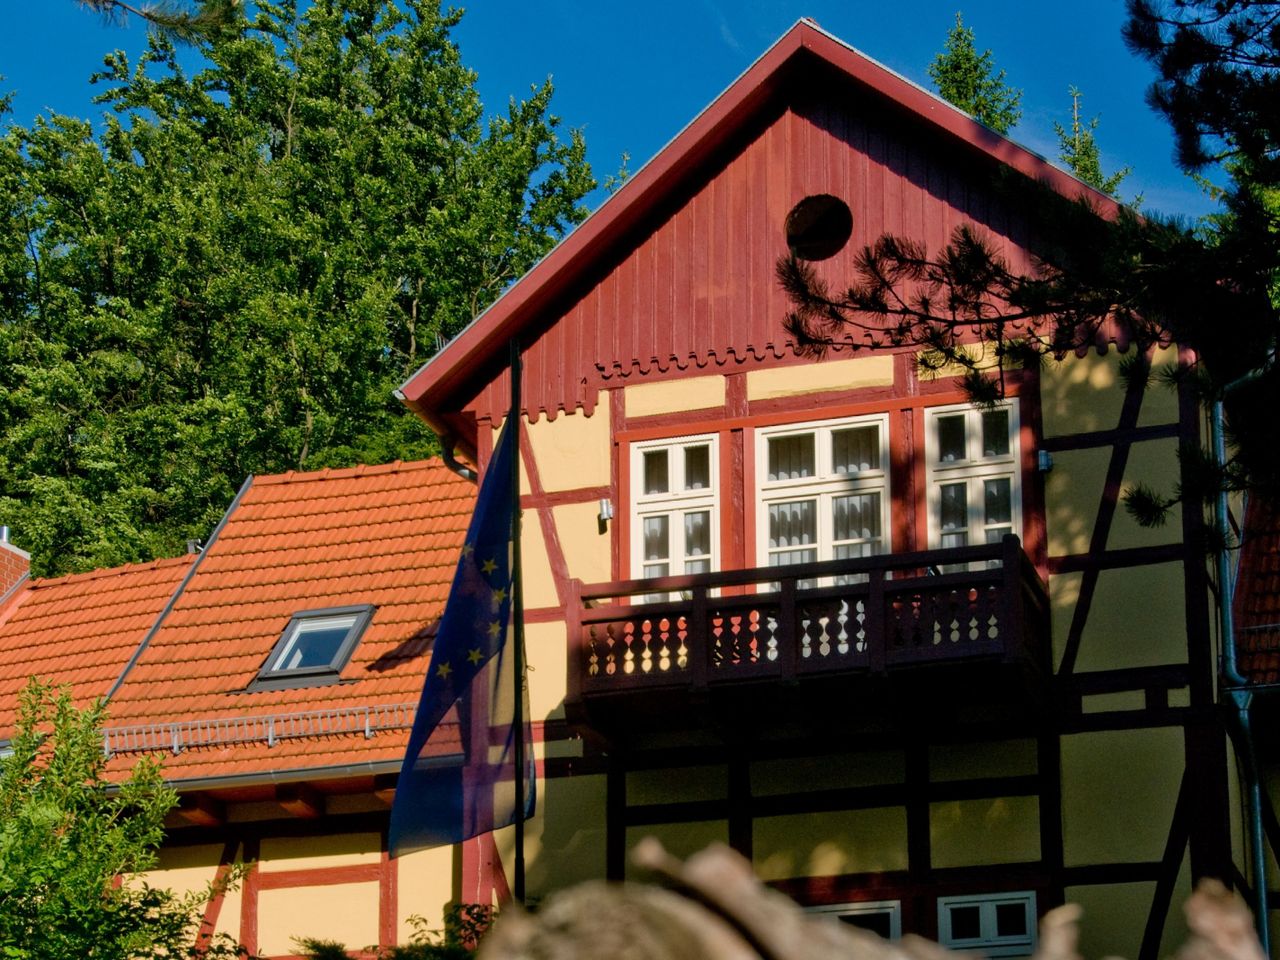 Harz'lich Willkommen - 4 Tage Auszeit im Habichtstein